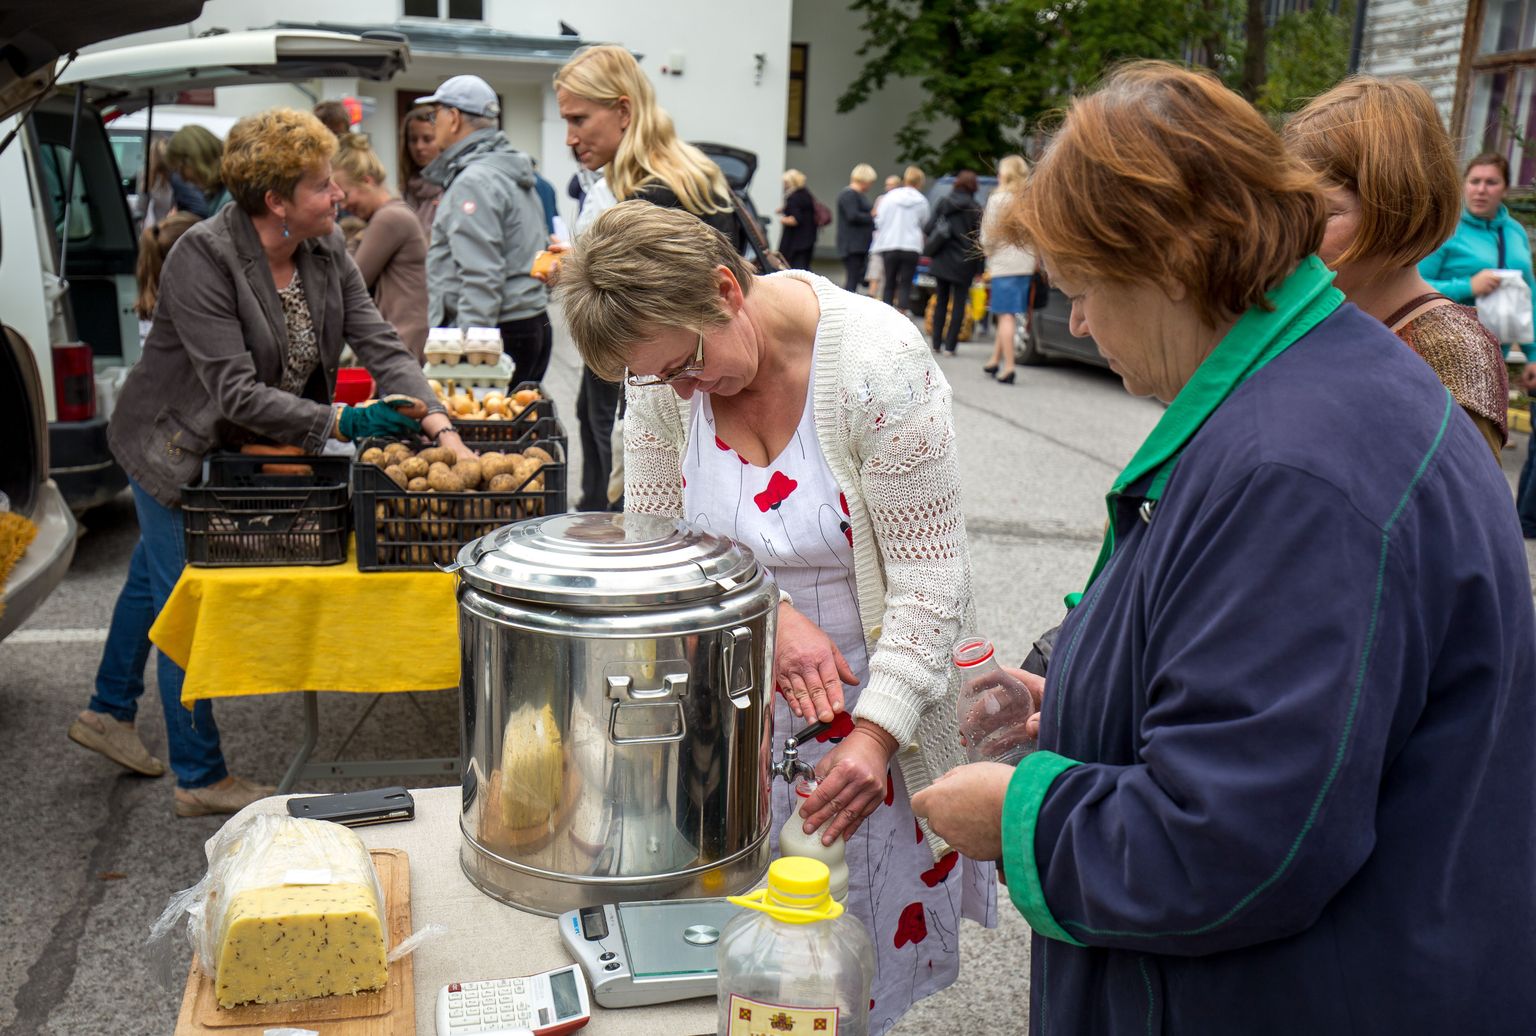 Alates 7.aprillist toimuvad neljapäeviti Pärnu Keskuse ees Martensi väljakul Pärnumaa toiduvõrgustiku OTT ehk otse tootjalt tarbijale turud.